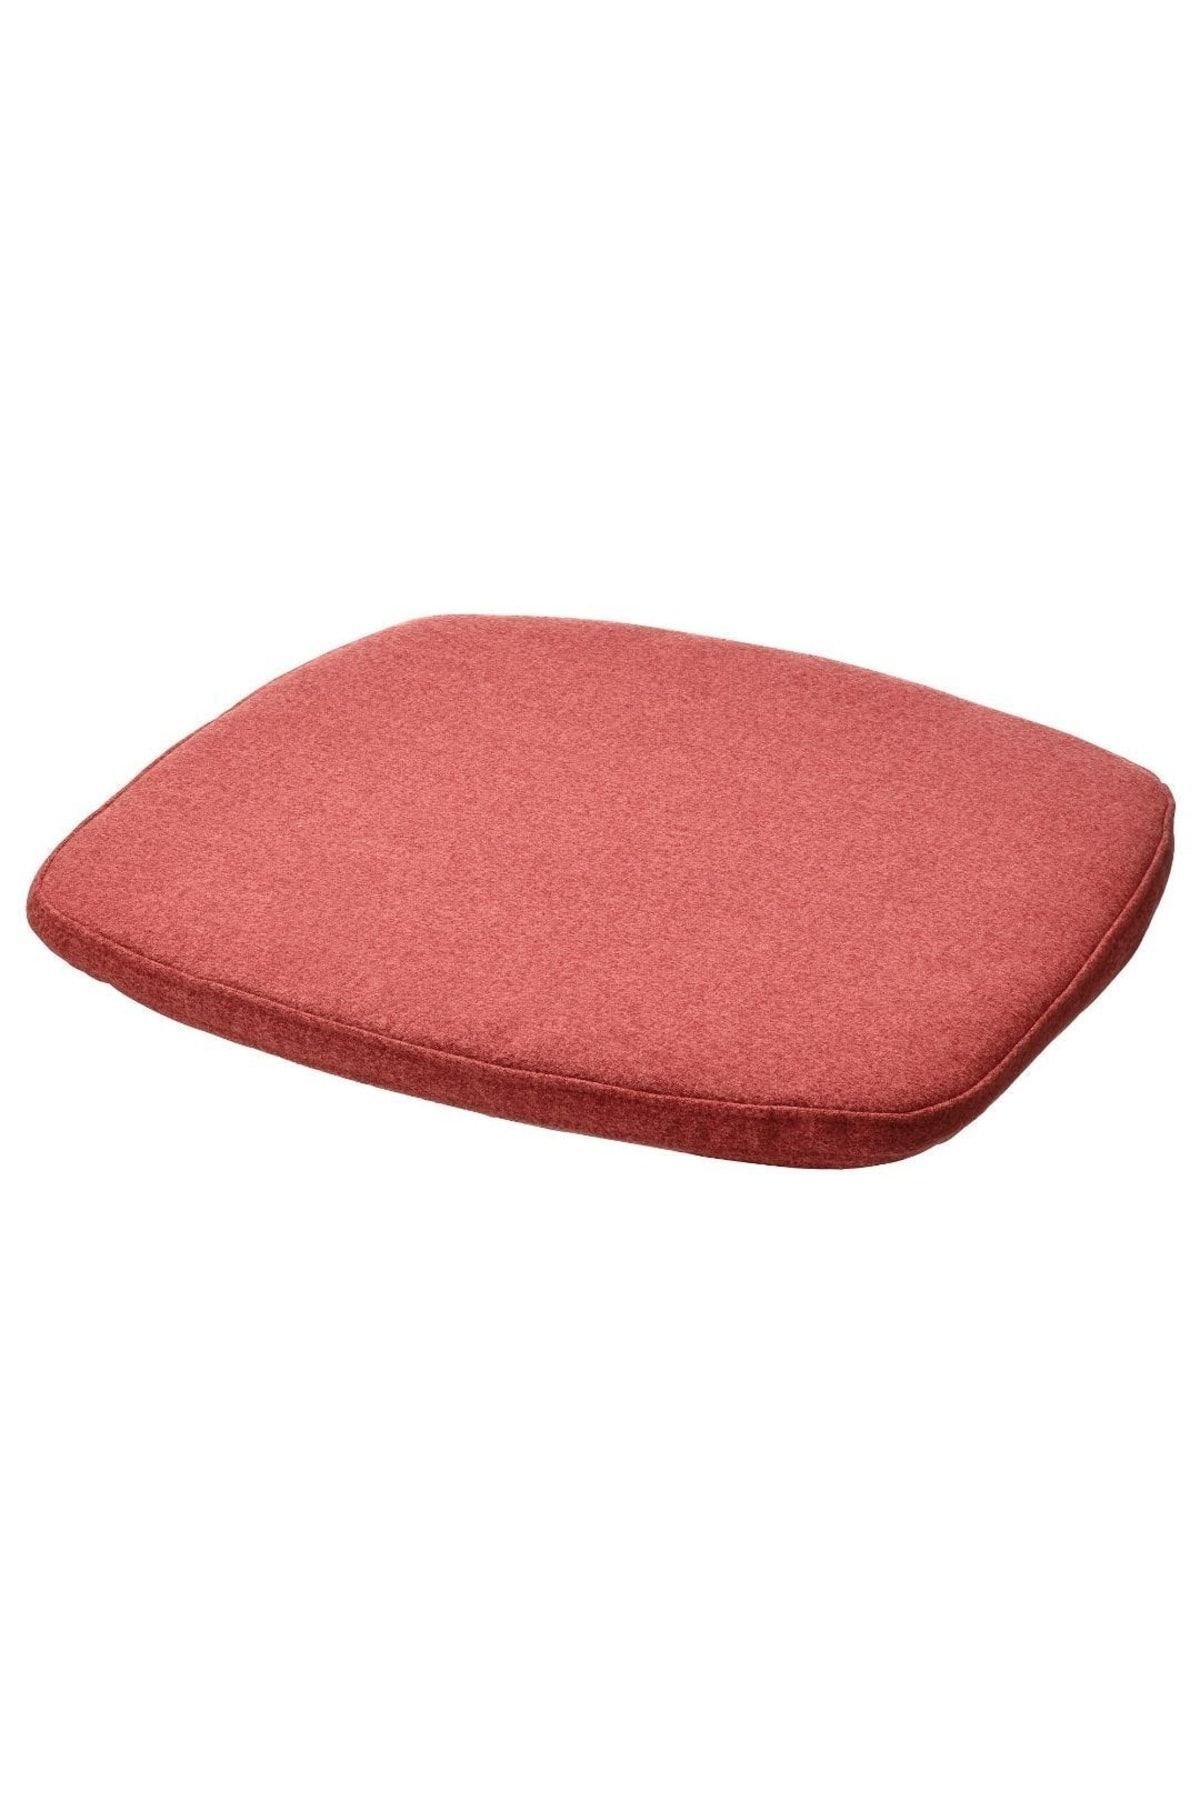 IKEA Alvgrasmal Sandalye Minderi, Kırmızı